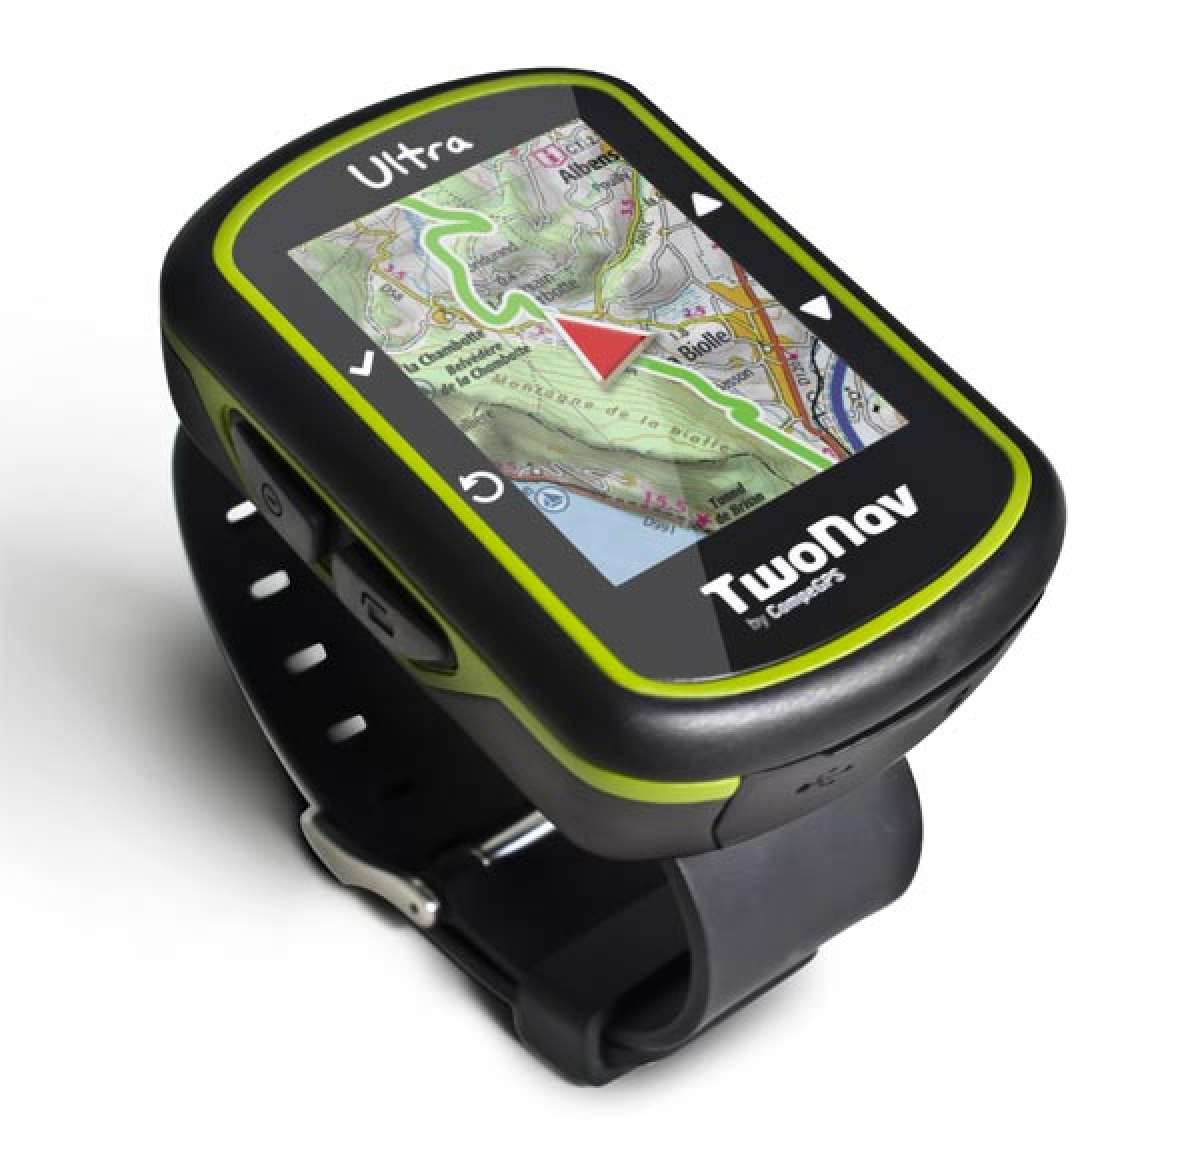 TwoNav Ultra, el nuevo dispositivo GPS de formato reducido más avanzado del momento: Primer contacto